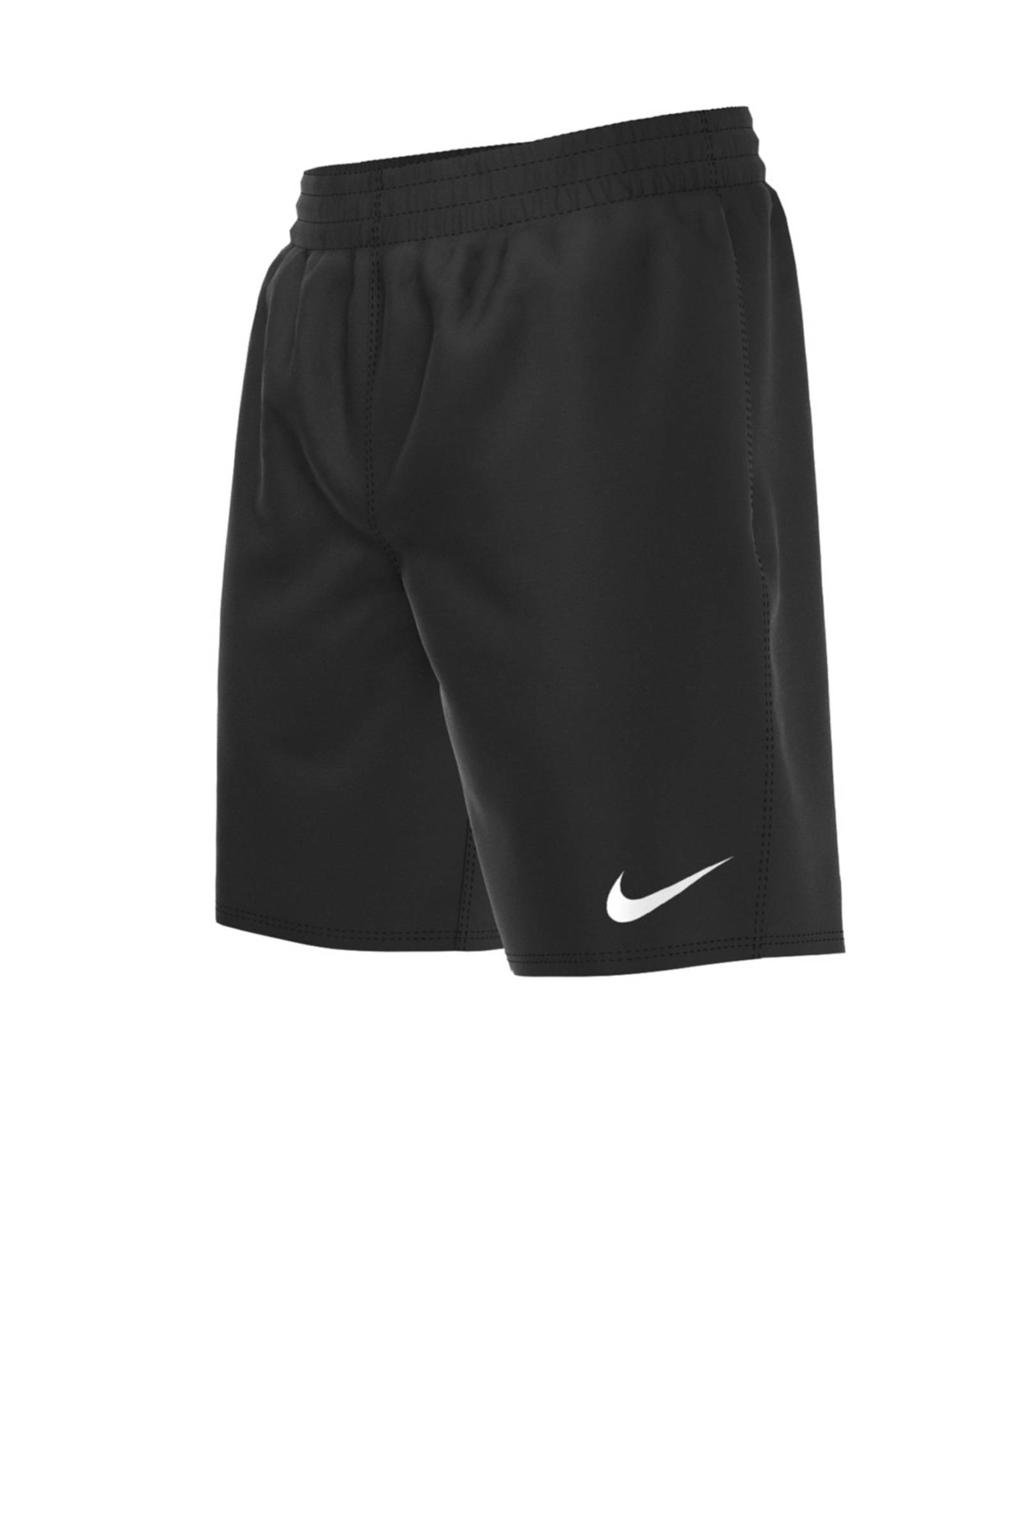 Nike zwemshort Essential 6" zwart